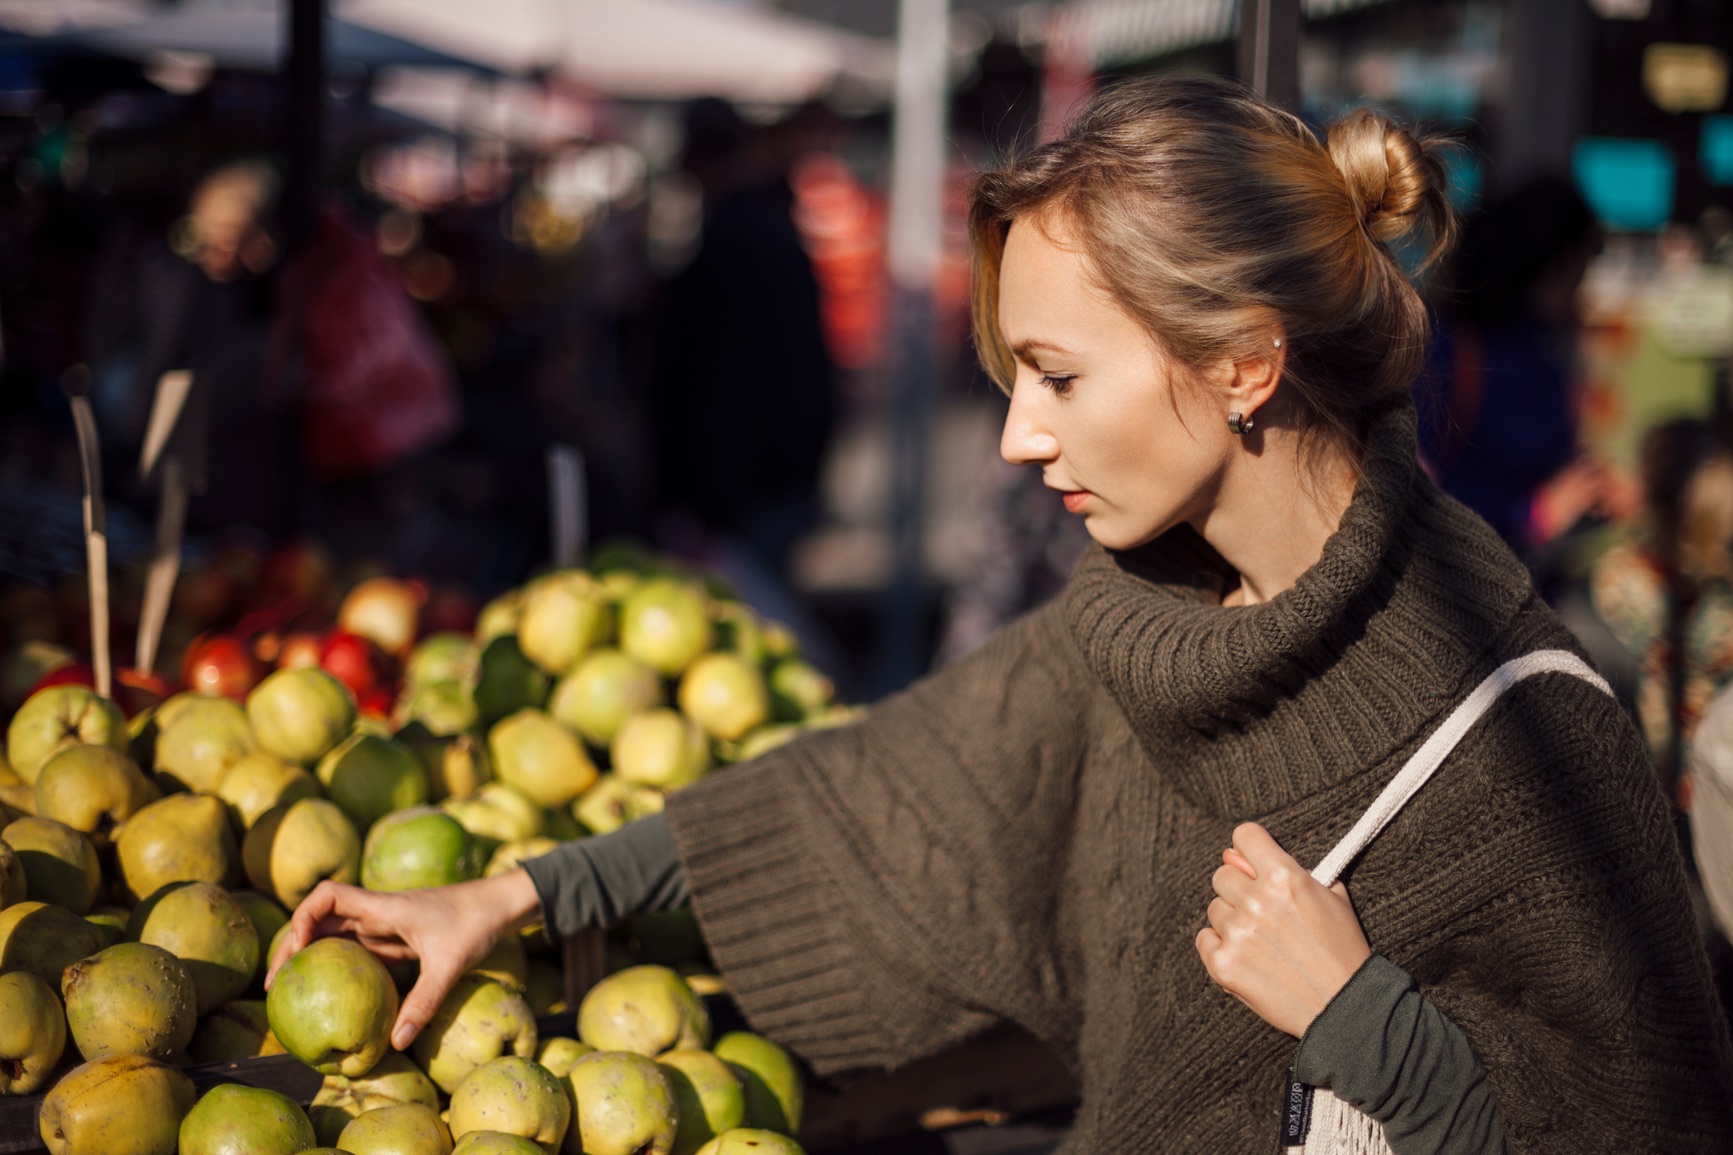 Woman examining fresh apples at a market stall.